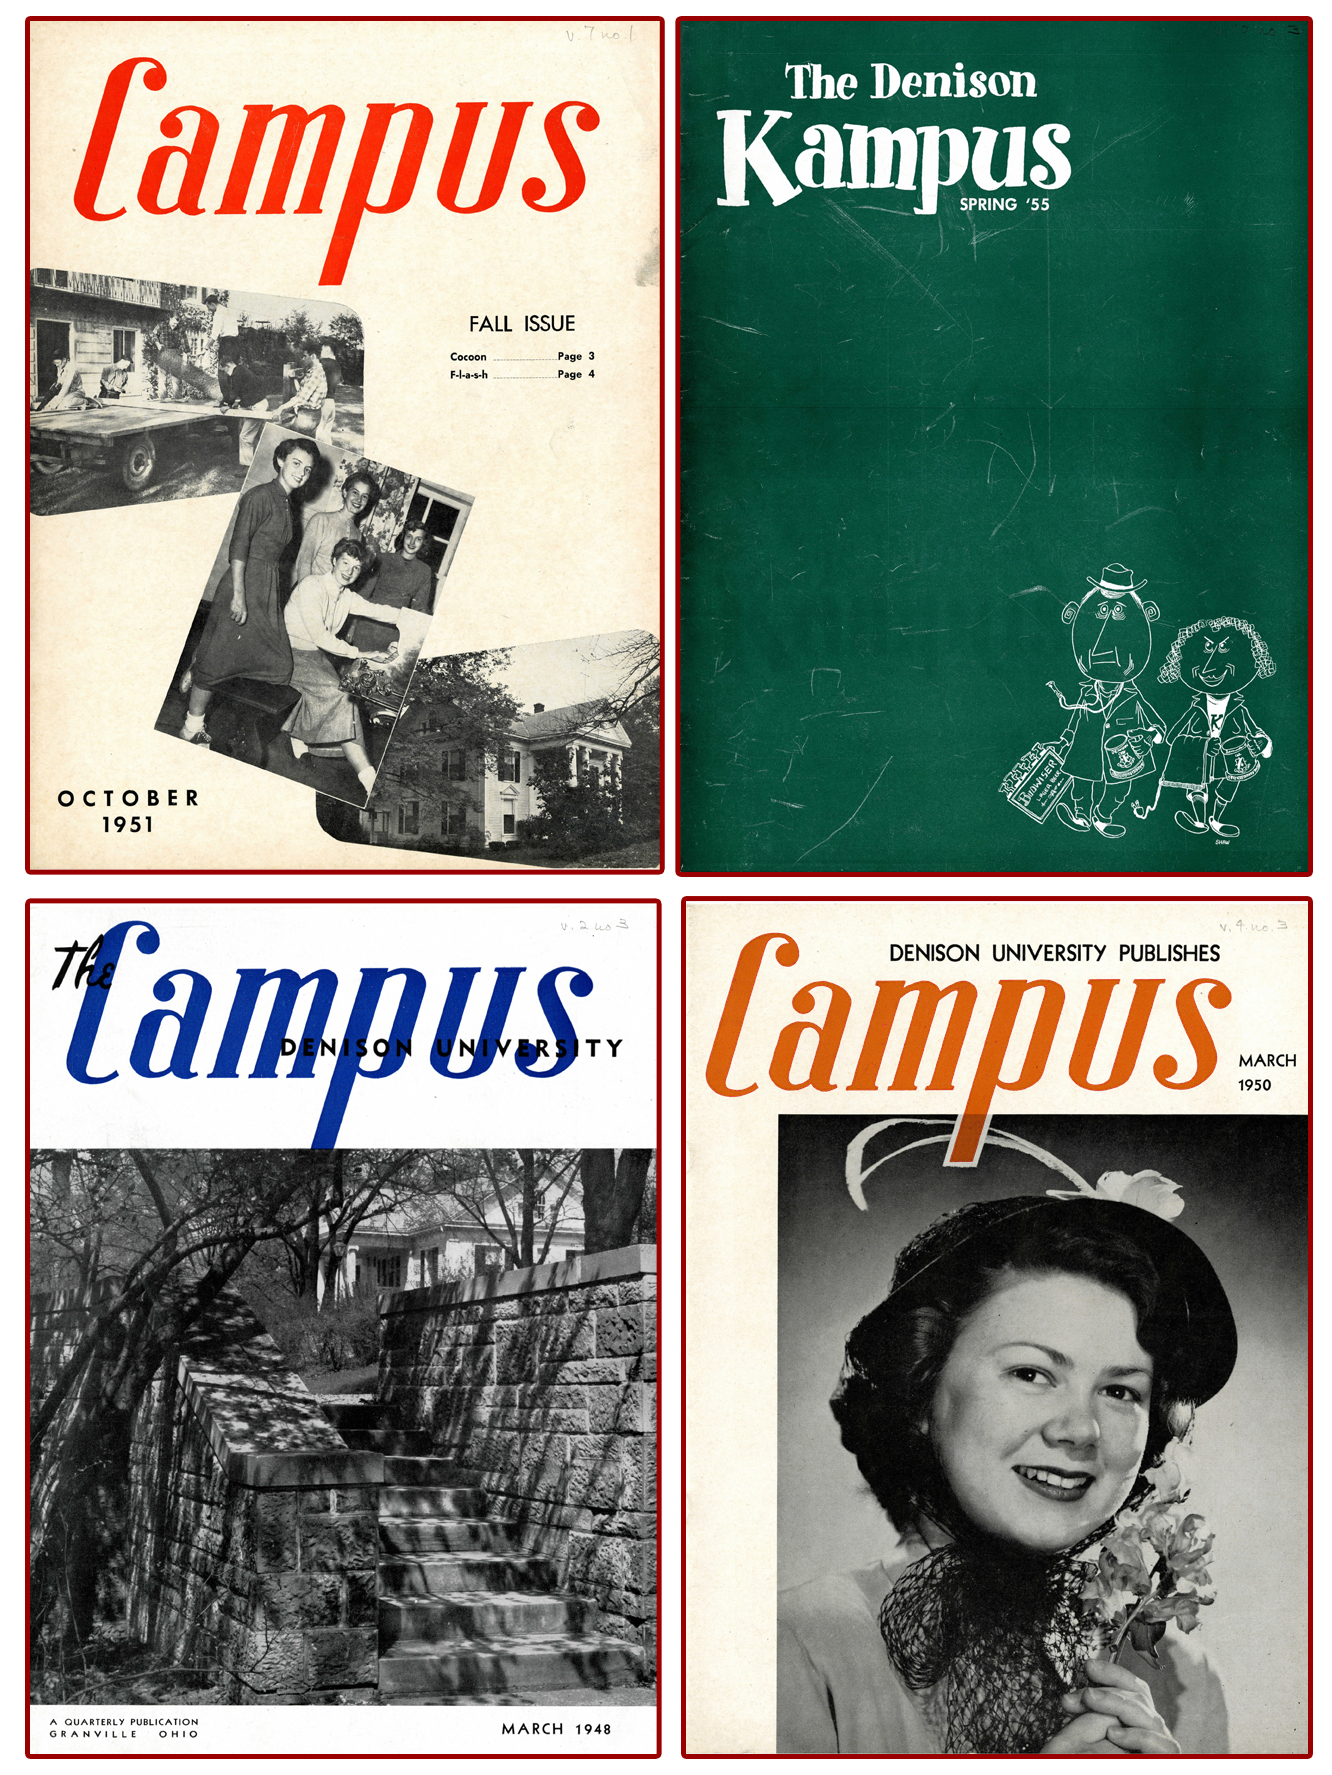 Campus cover art